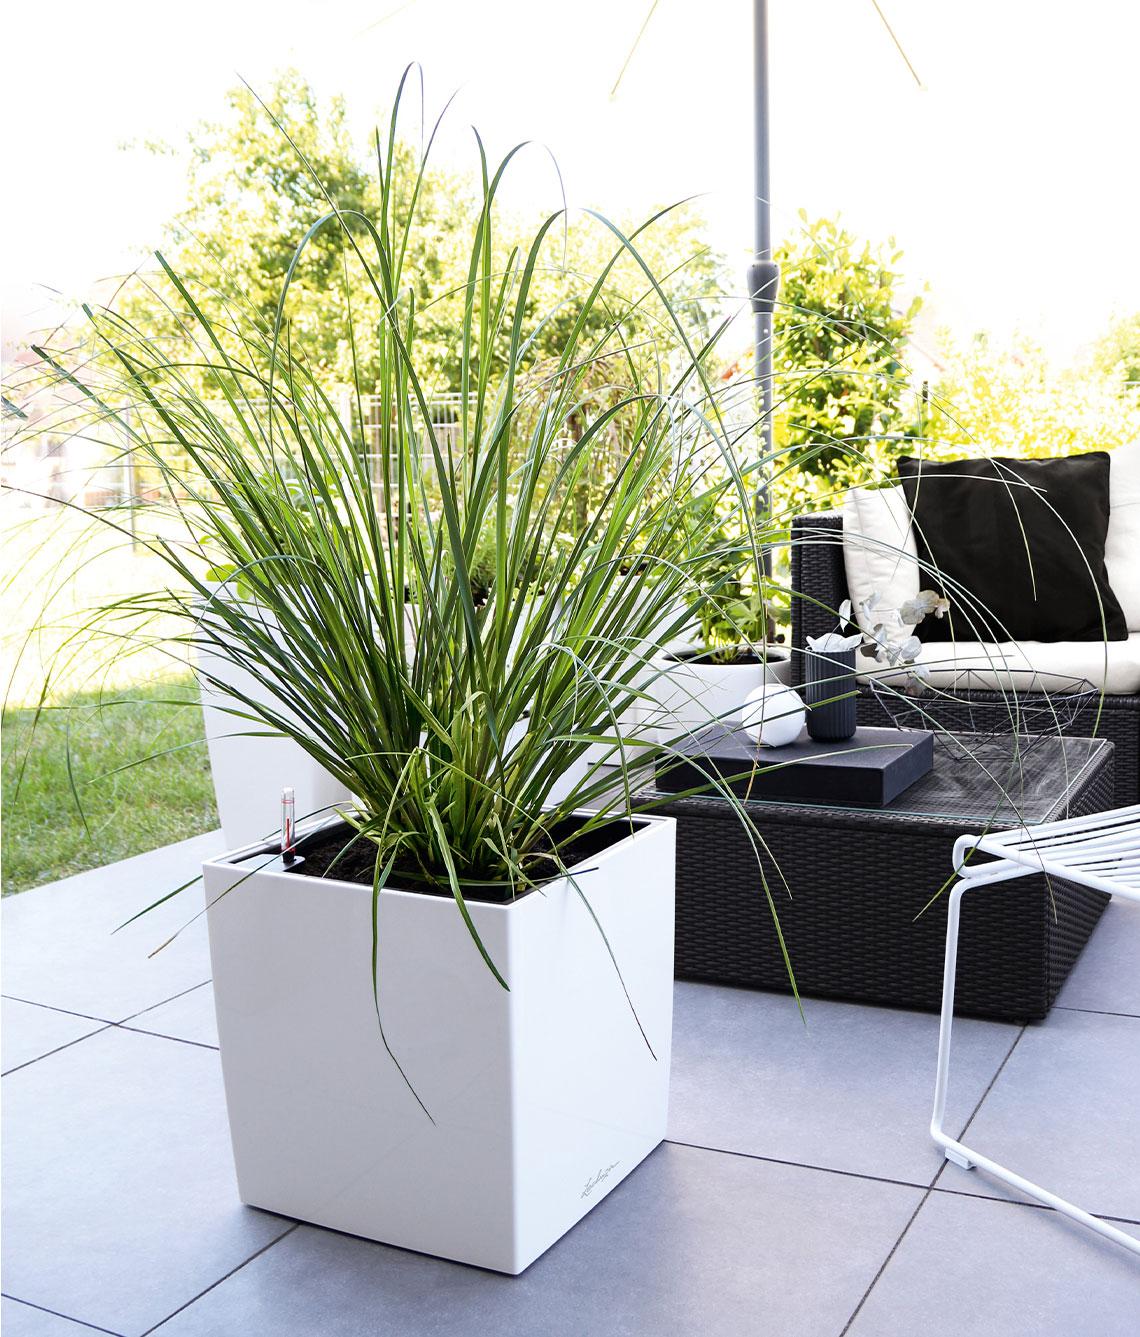 Witte CUBE Premium beplant met hoog groen gras op een donker terras